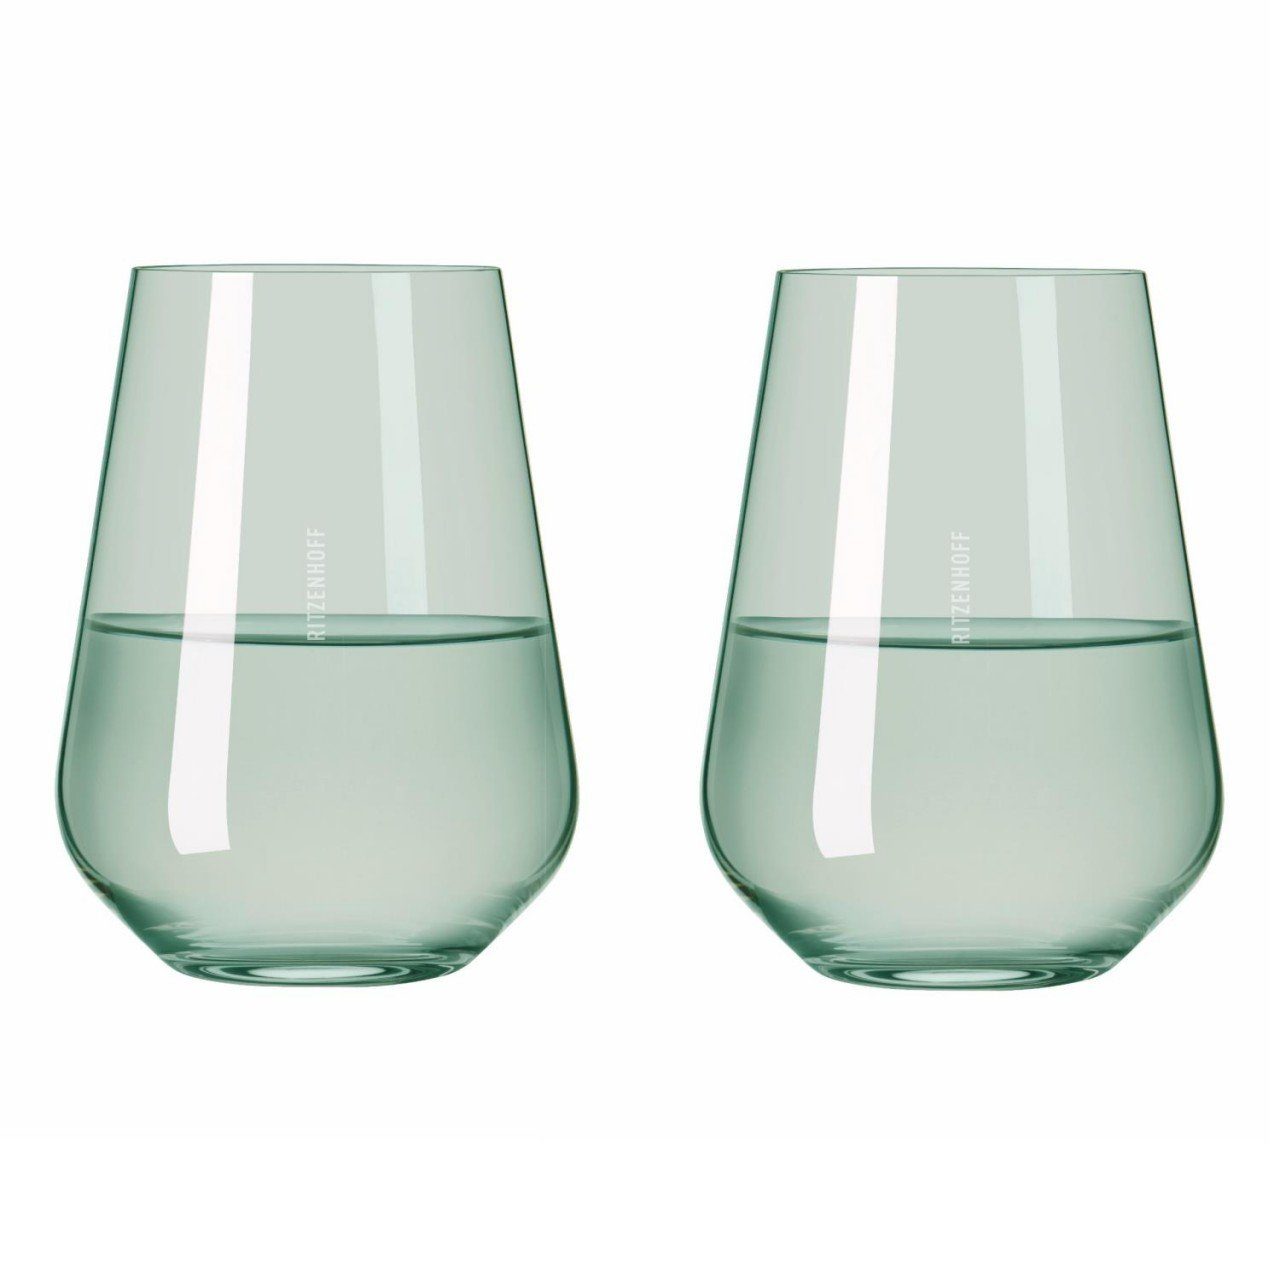 Ritzenhoff Glas Glas, Weißwein‐ Kollektion Glas, und derselben Grün Fjordlicht, erhältlich D:9.3cm H:12.4cm Rotweingläser Passende